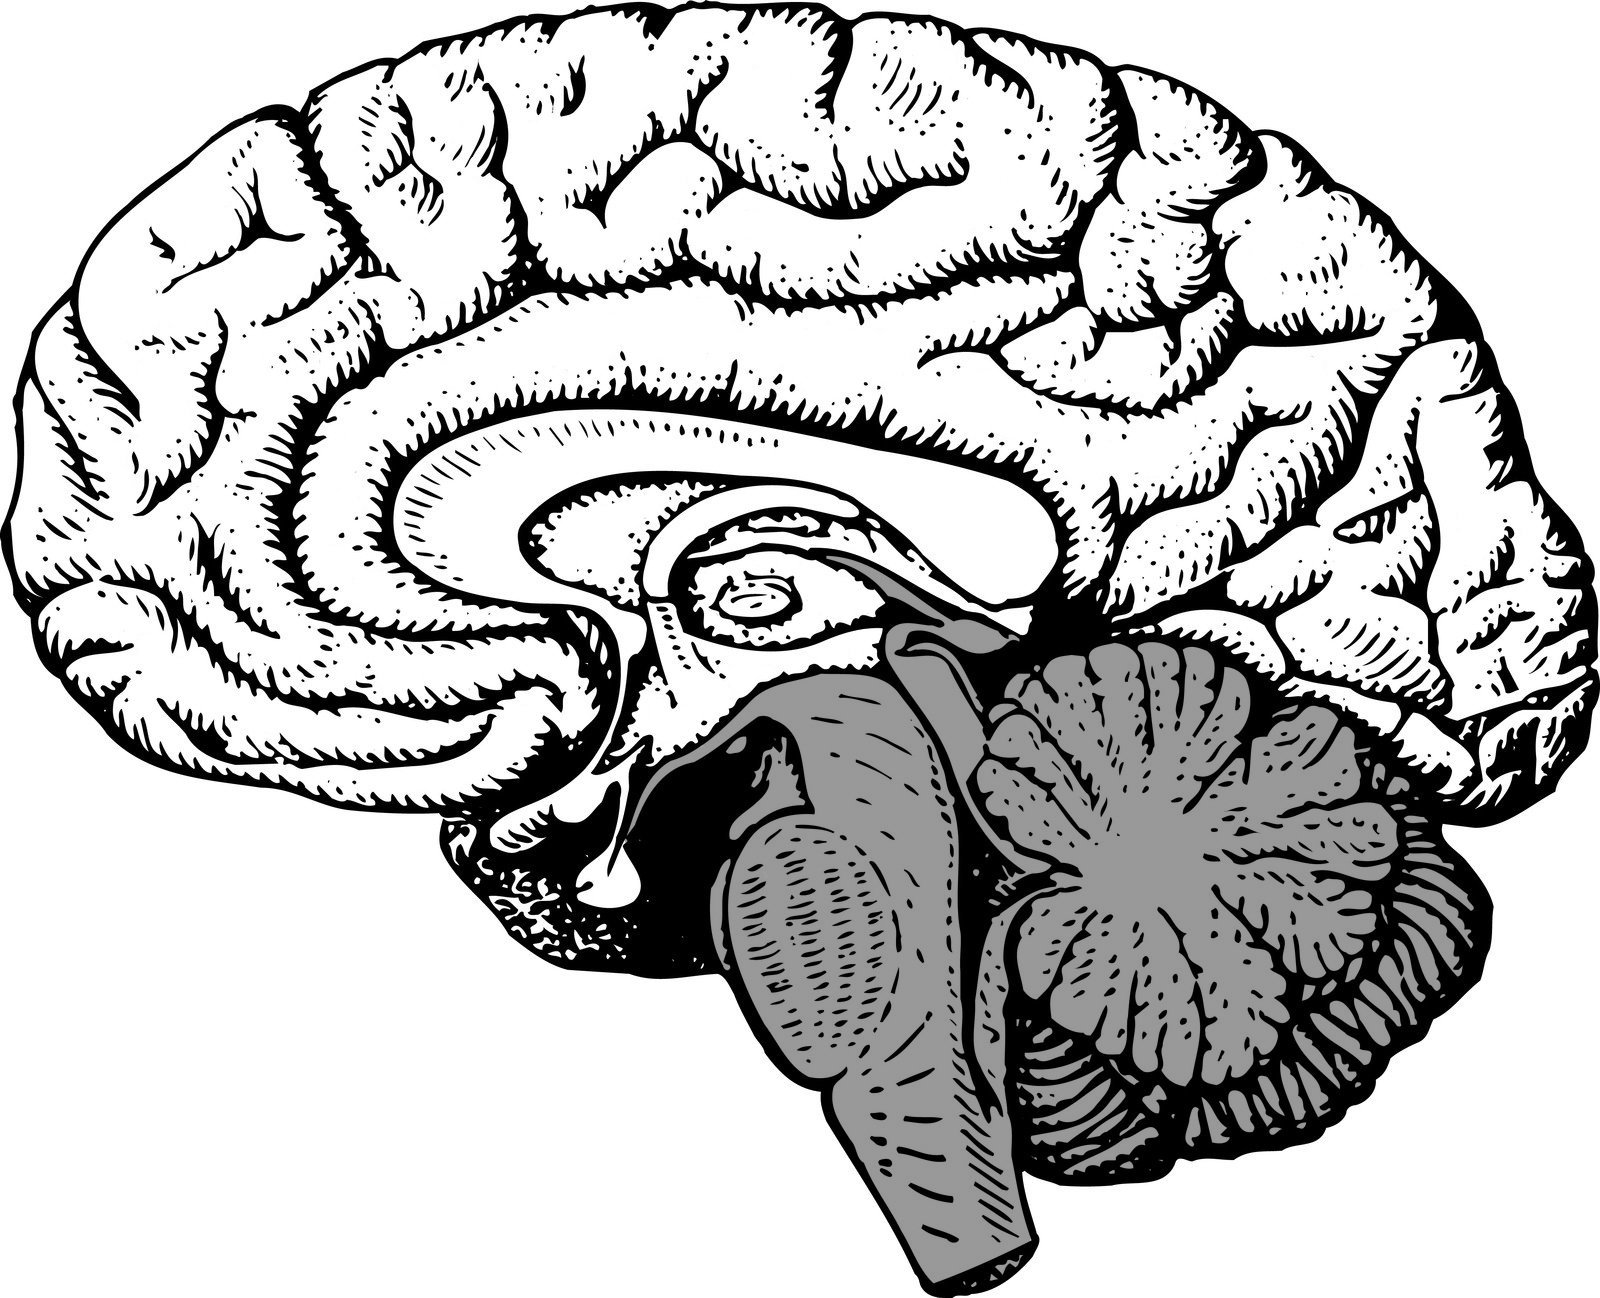 Мозг без подписей. Сагиттальный разрез головного мозга человека. Сагиттальный разрез мозга анатомия. Сагиттальный разрез головного мозга человека рисунок. Сагиттальный срез головного мозга анатомия.